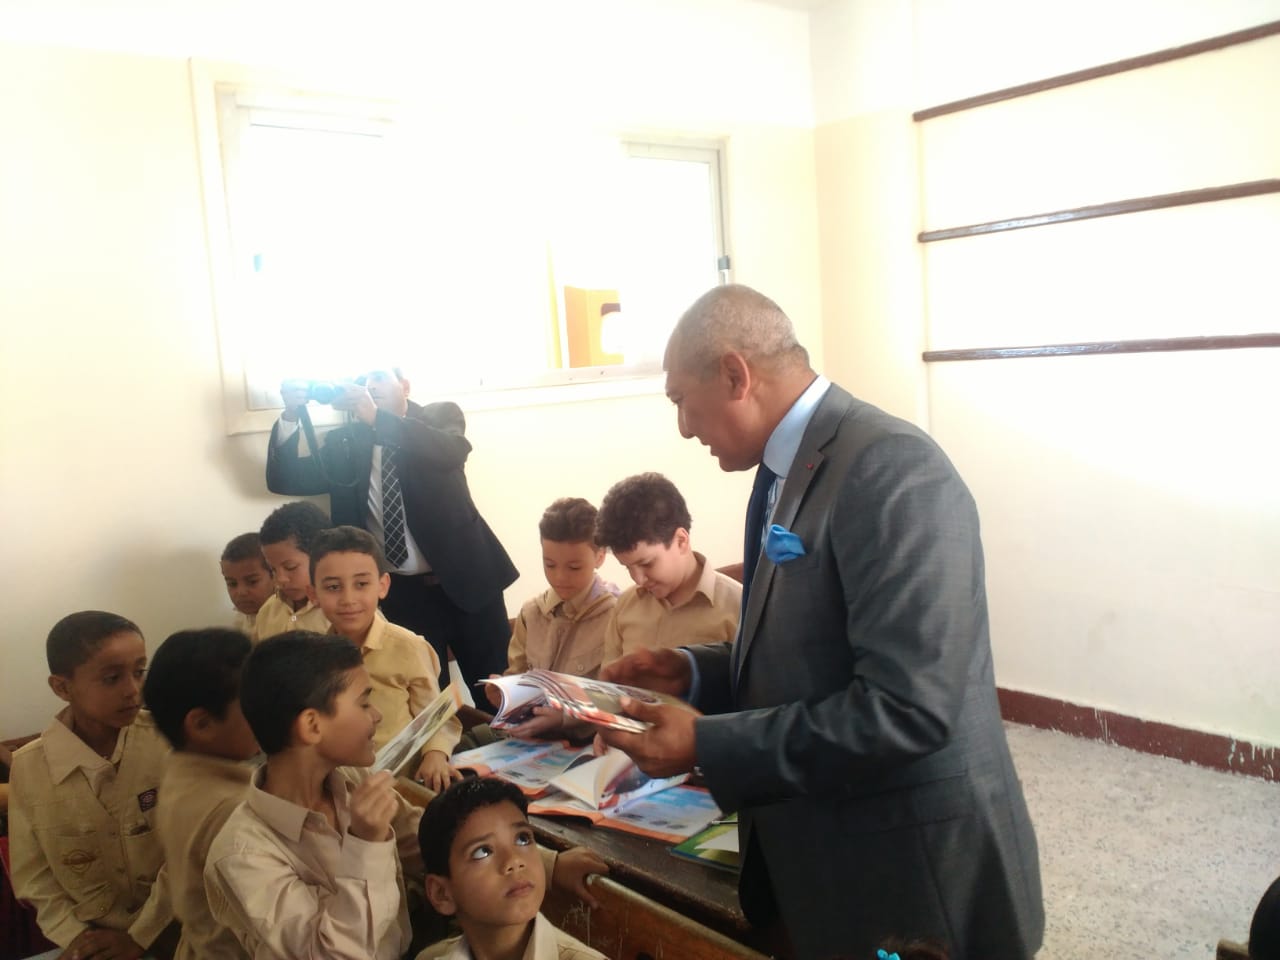 اللواء هشام نصر يوزع هدايا الوزارة على تلاميذ الابتدائي